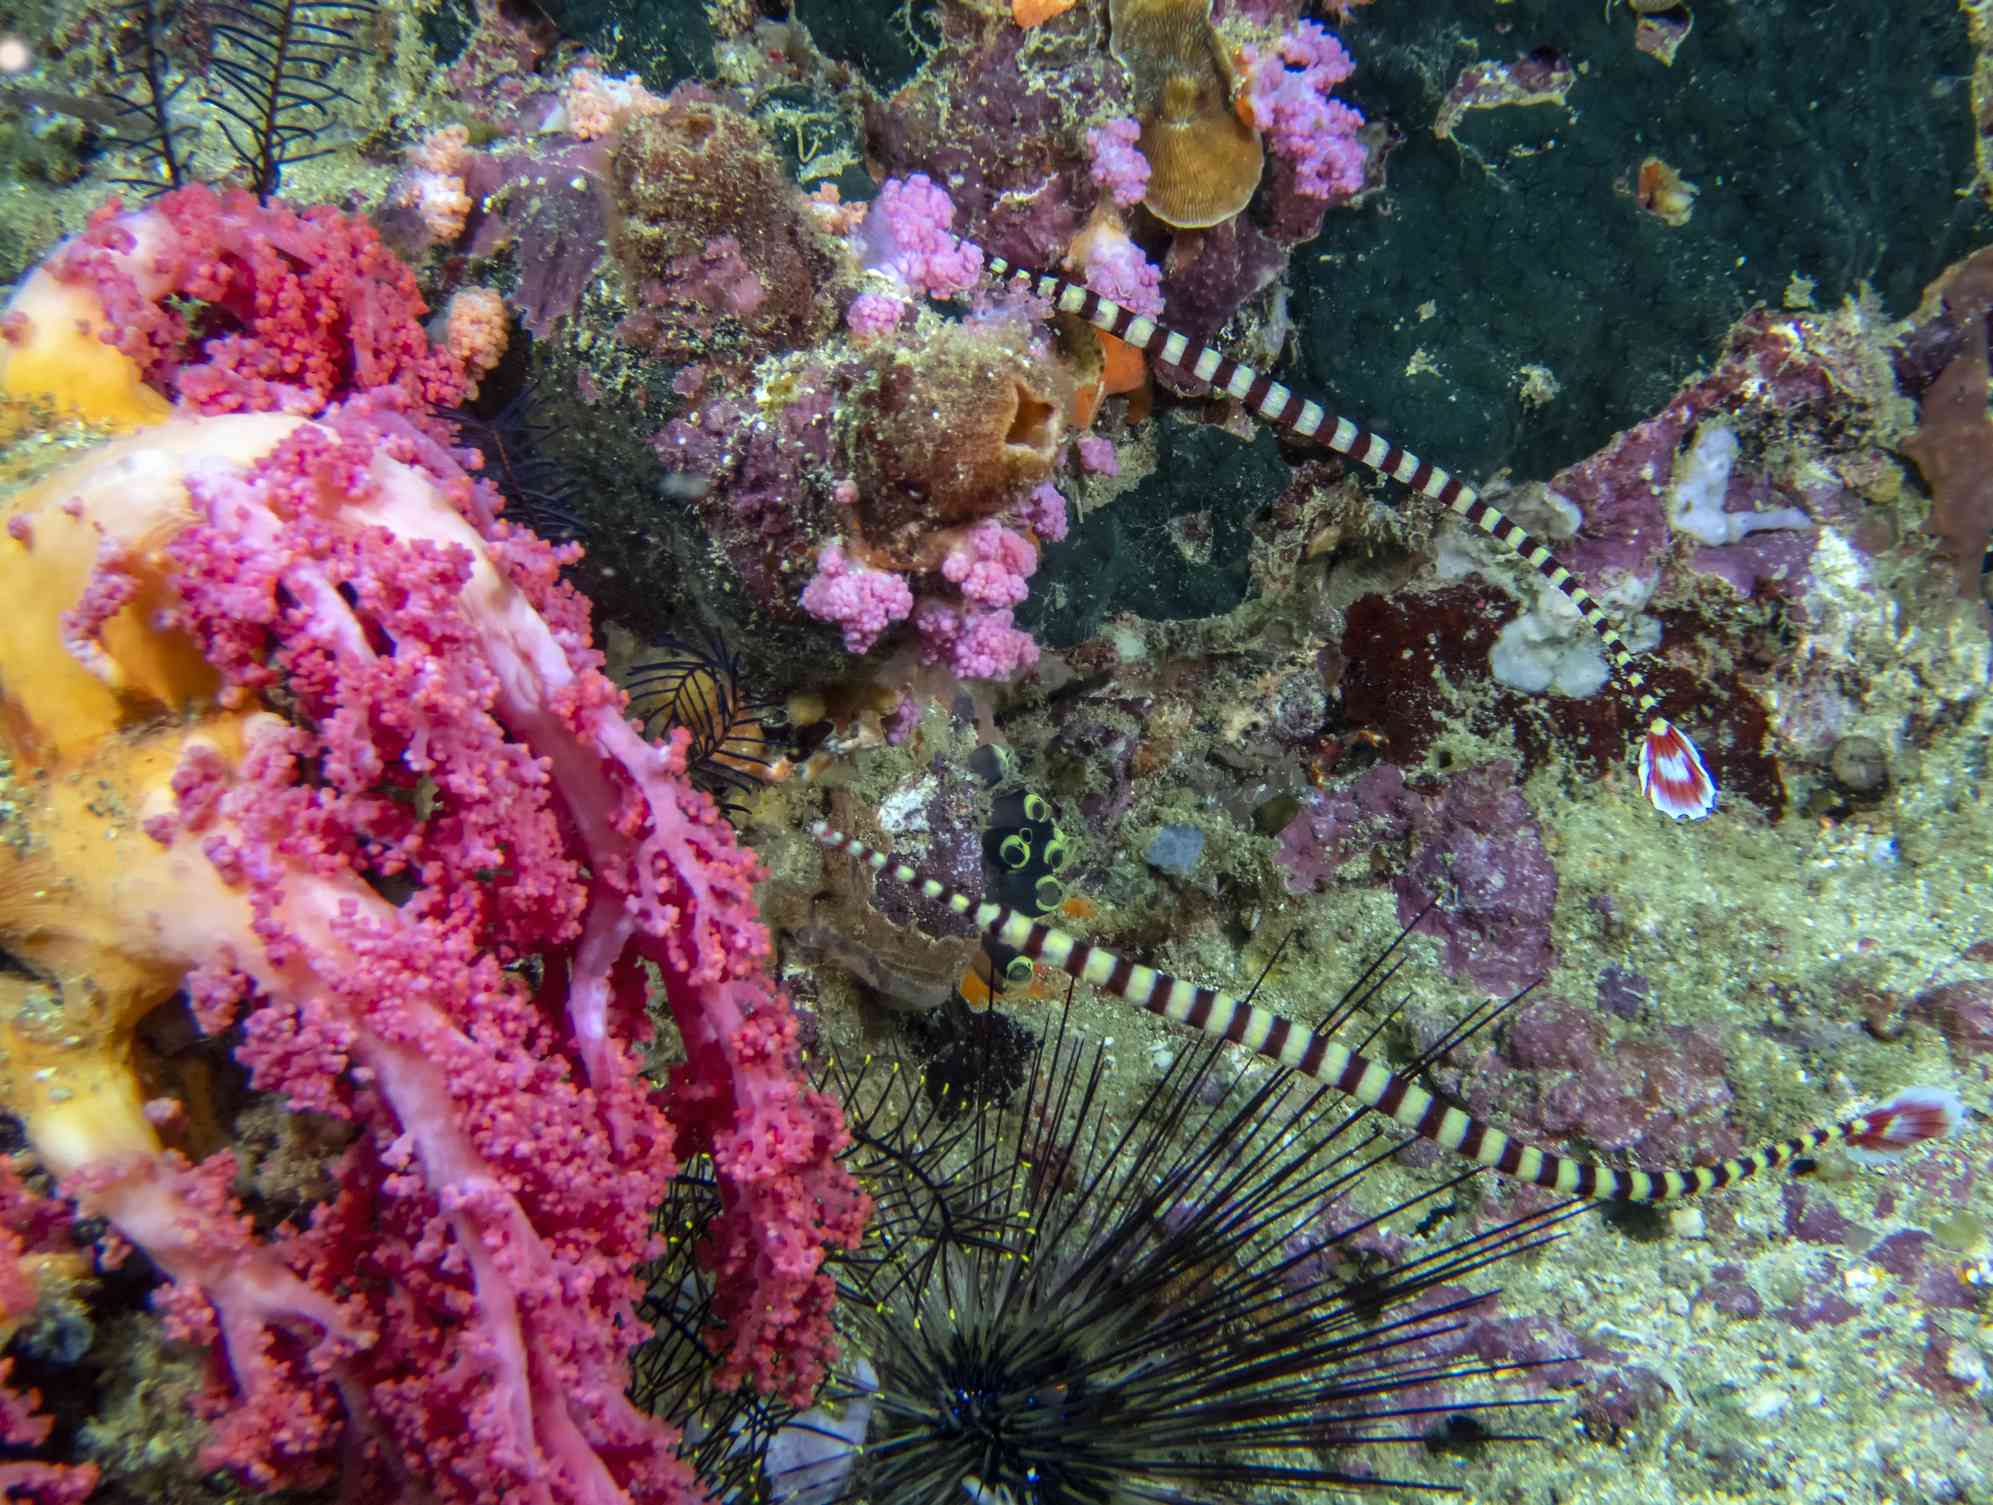 Un par de peces pipa con rayas negras y amarillas en un arrecife rosa, amarillo y lavanda